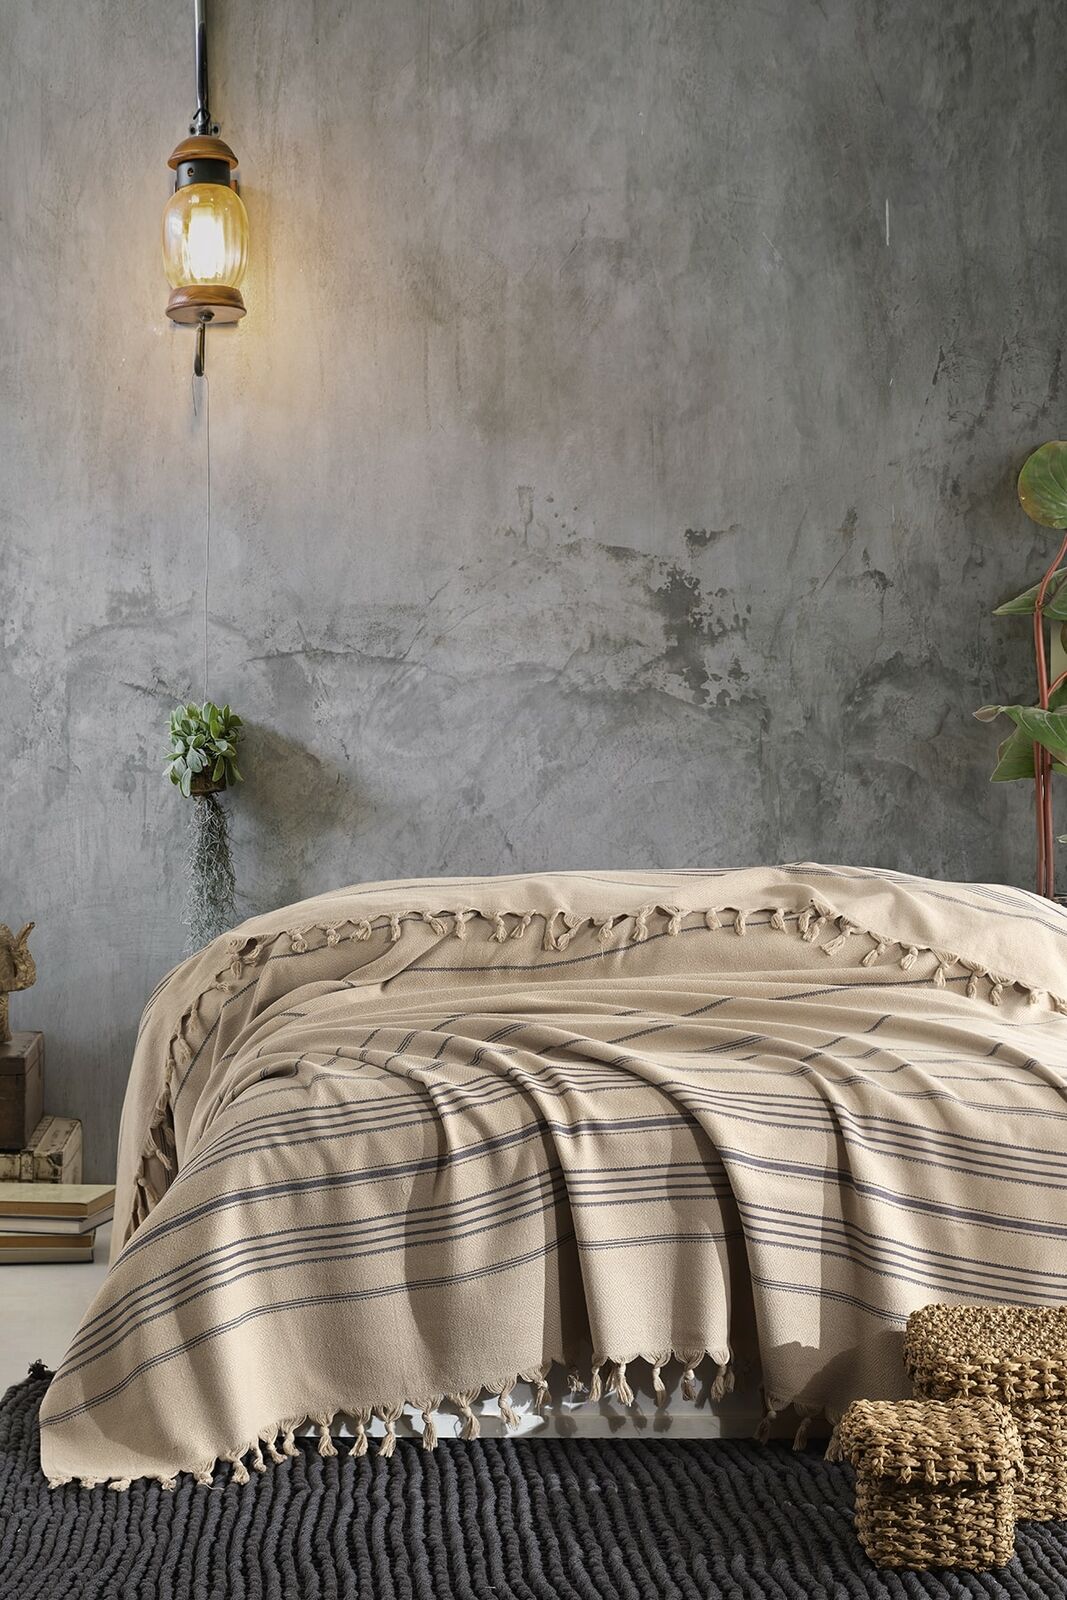 100% cotton quilt bedspread bedspread bedding oversized 220x240cm 2021 Najniższa cena, wybuchowy zakup